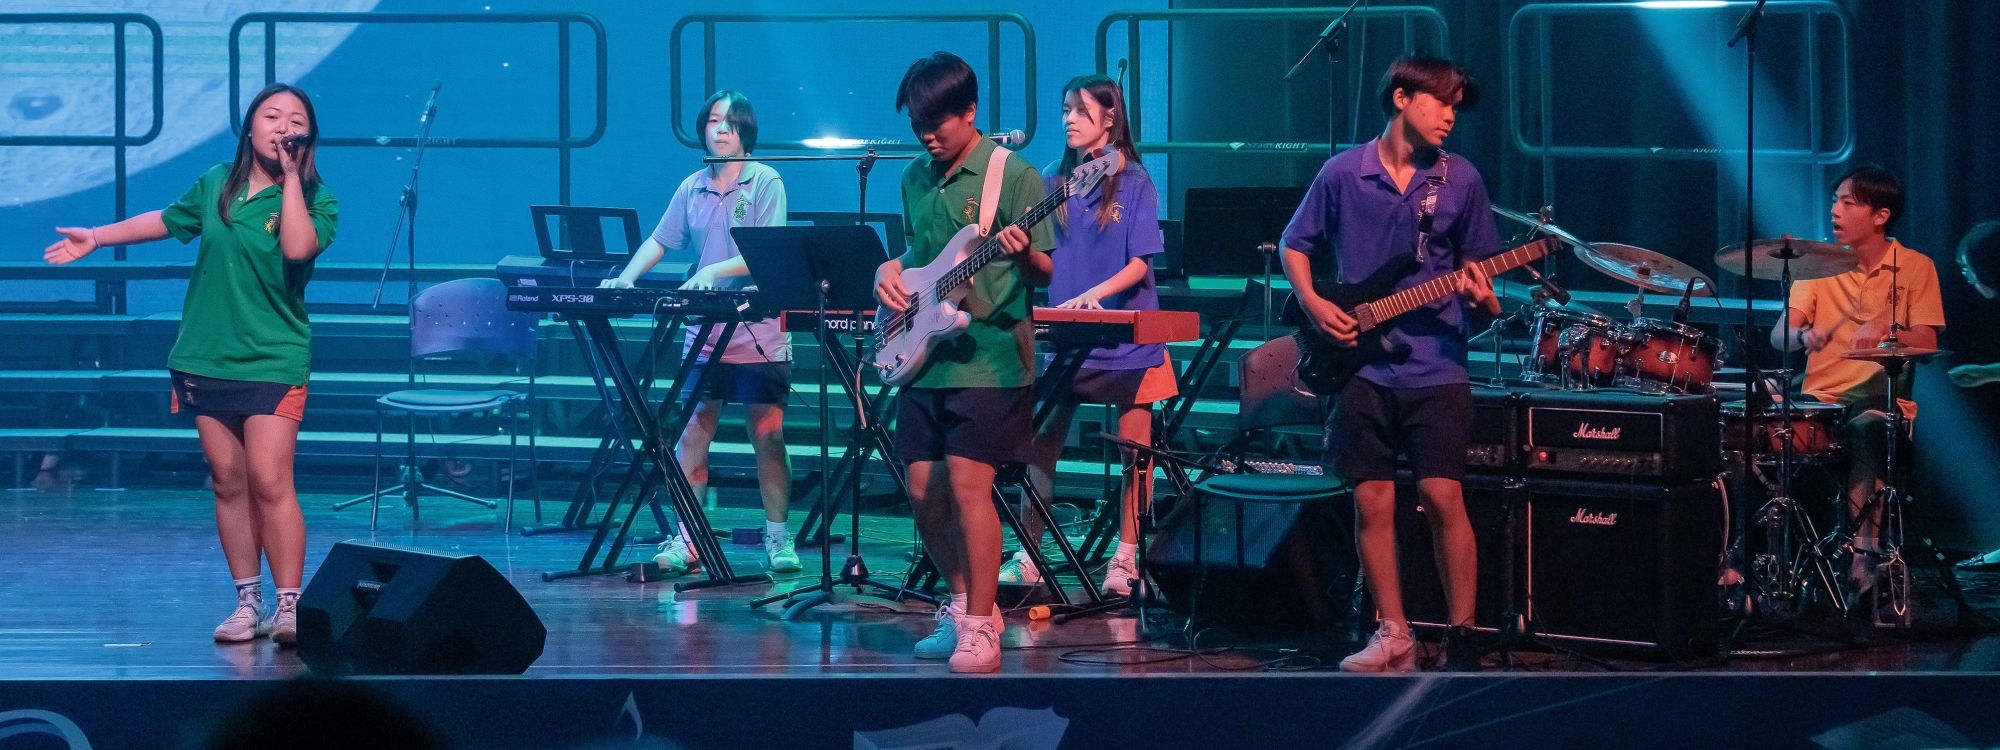 A Night at the Movies: Music Celebration Concert at King's Bangkok